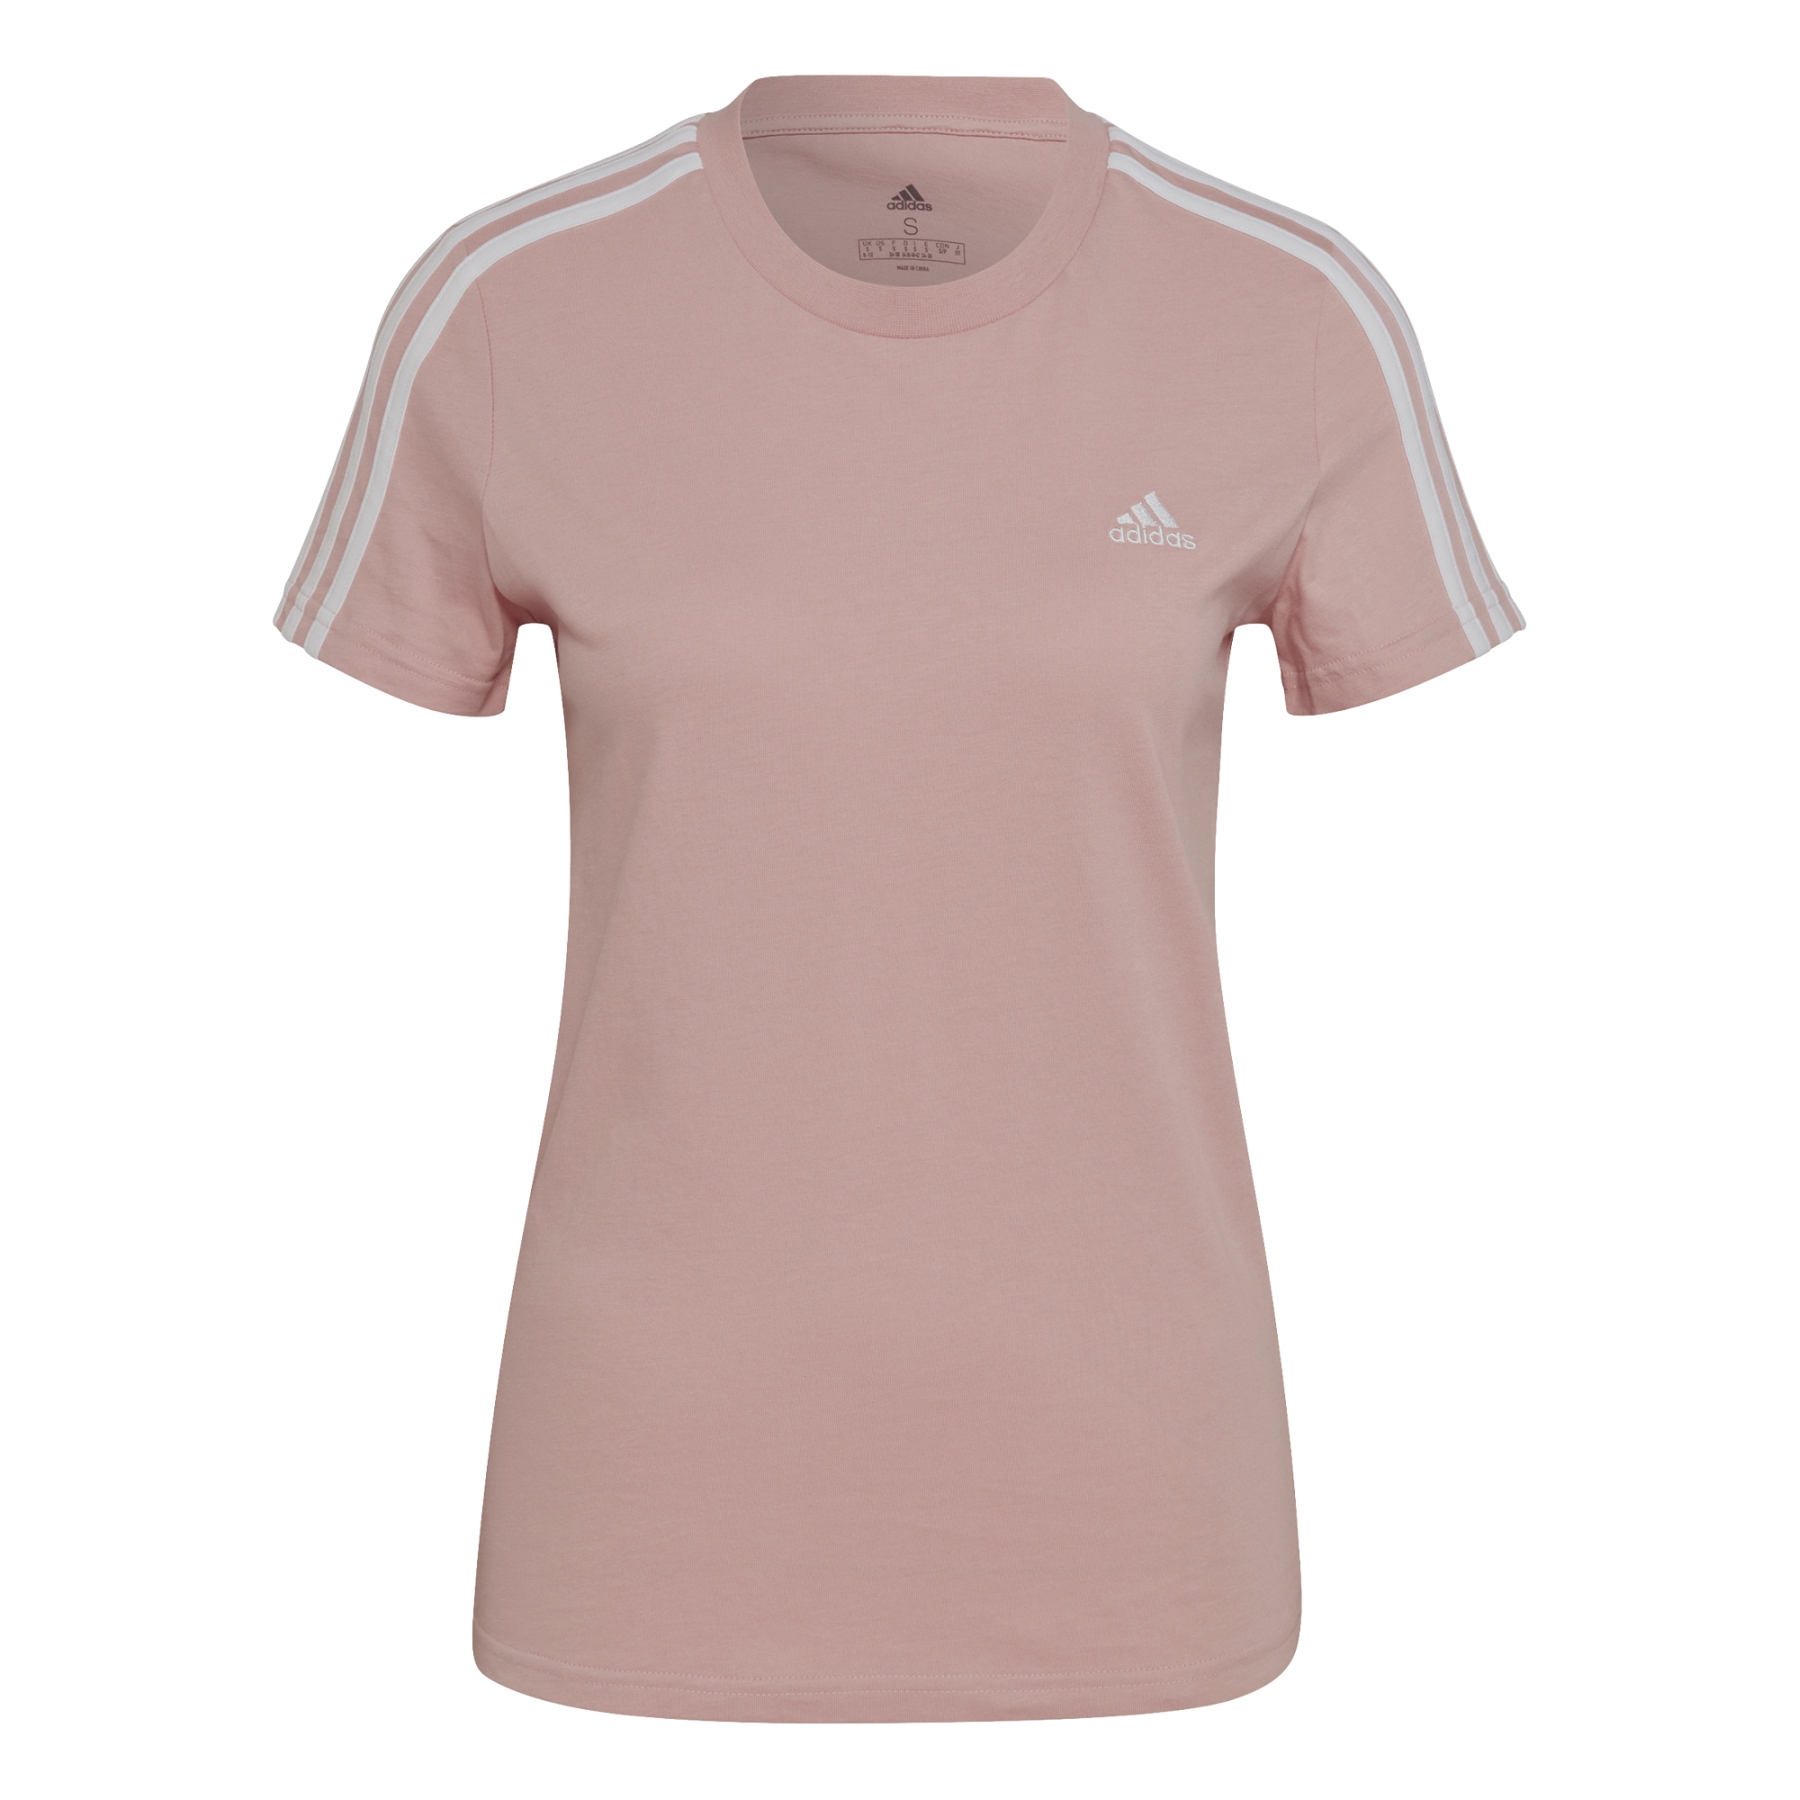 Produktbild von adidas Frauen LOUNGEWEAR Essentials Slim 3-Streifen T-Shirt - wonder mauve/weiss HF7236